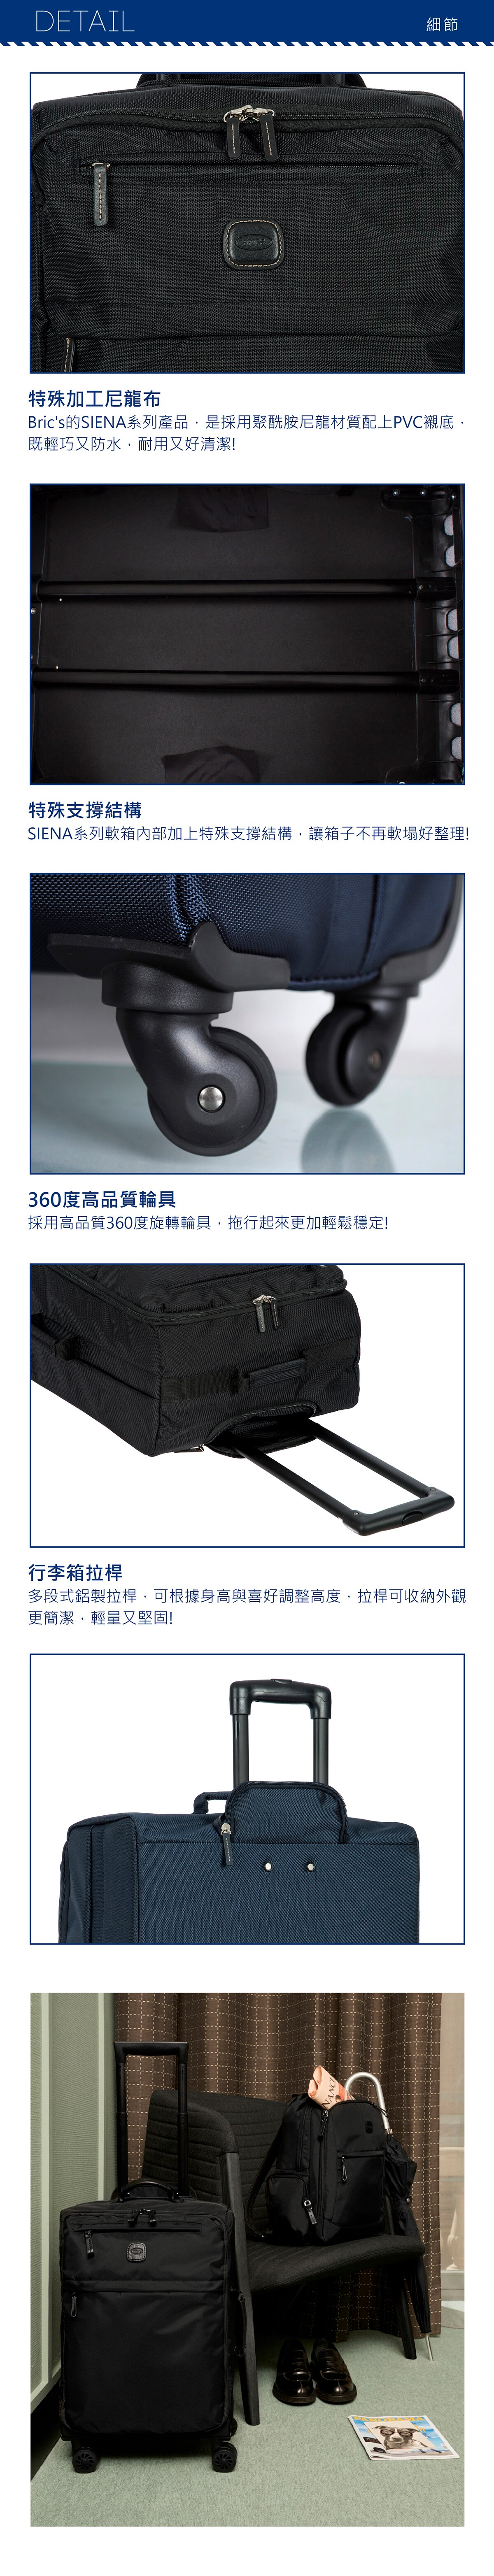 BRIC'S 28吋黑色行李箱,360度高品質輪具,採用高品質360度旋轉輪具,拖行起來更加輕鬆穩定,行李箱拉桿,多段式鋁製拉桿,可根據身高與喜好調整高度,拉桿可收納外觀更簡潔,輕量又堅固.